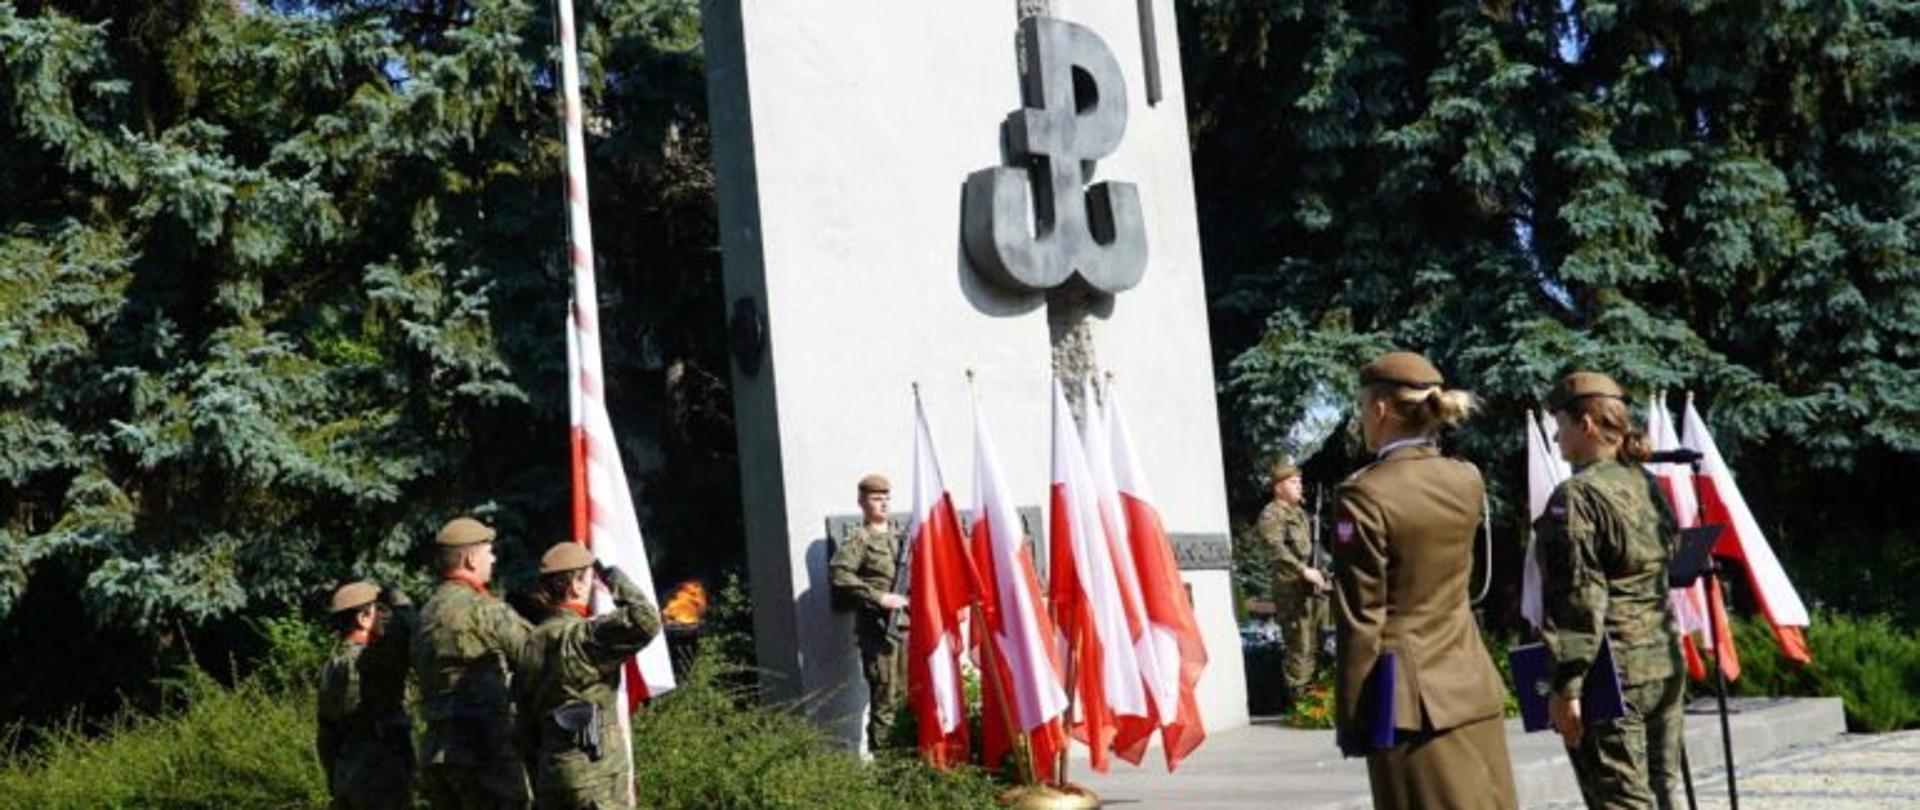 Obchody 82. rocznicy utworzenia Polskiego Państwa Podziemnego